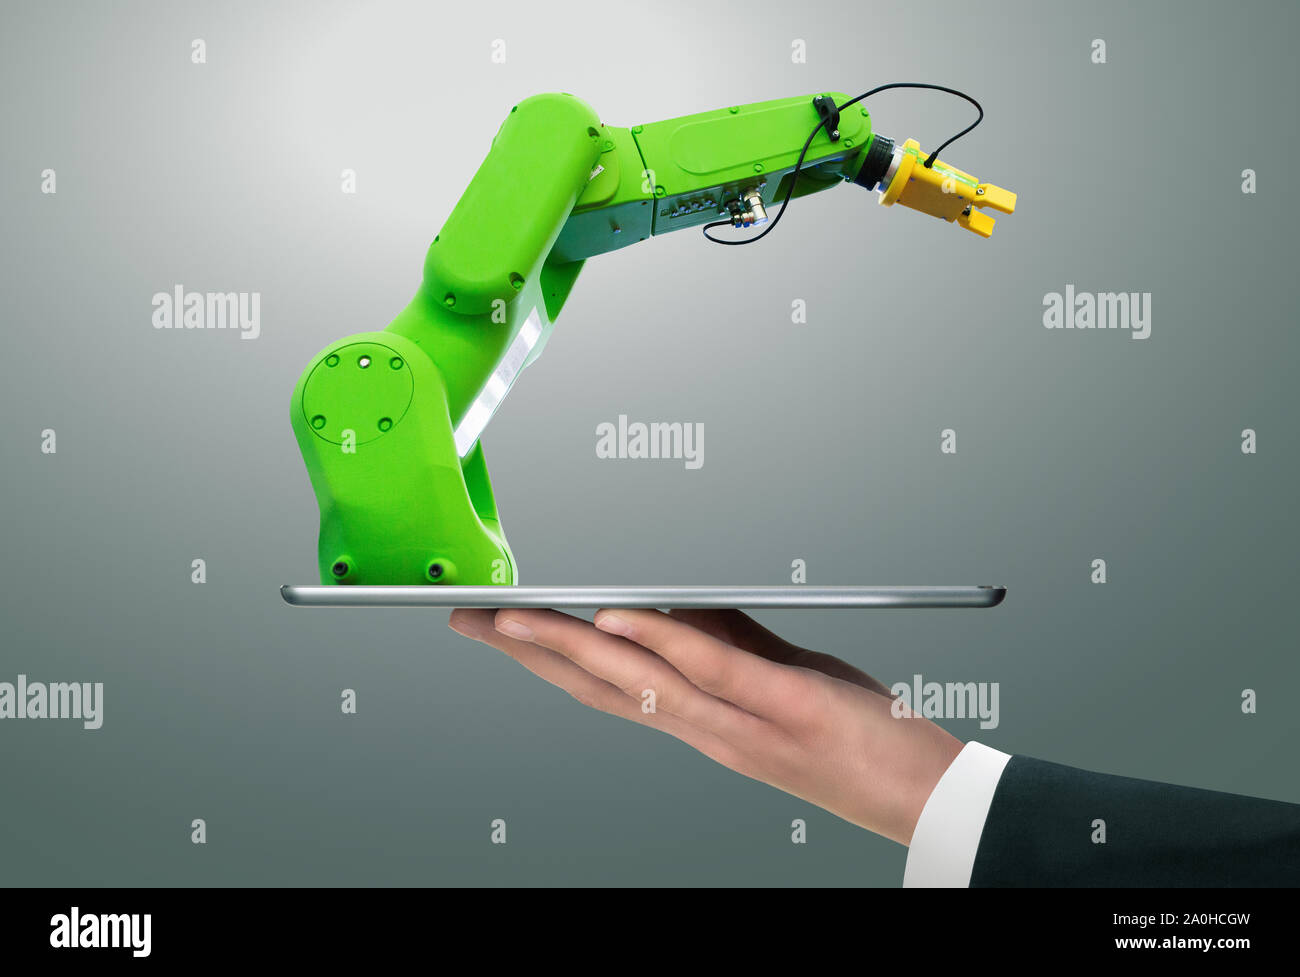 Hombre sujetando una tableta digital con robot de manipulación con brazo robótico. Foto de stock